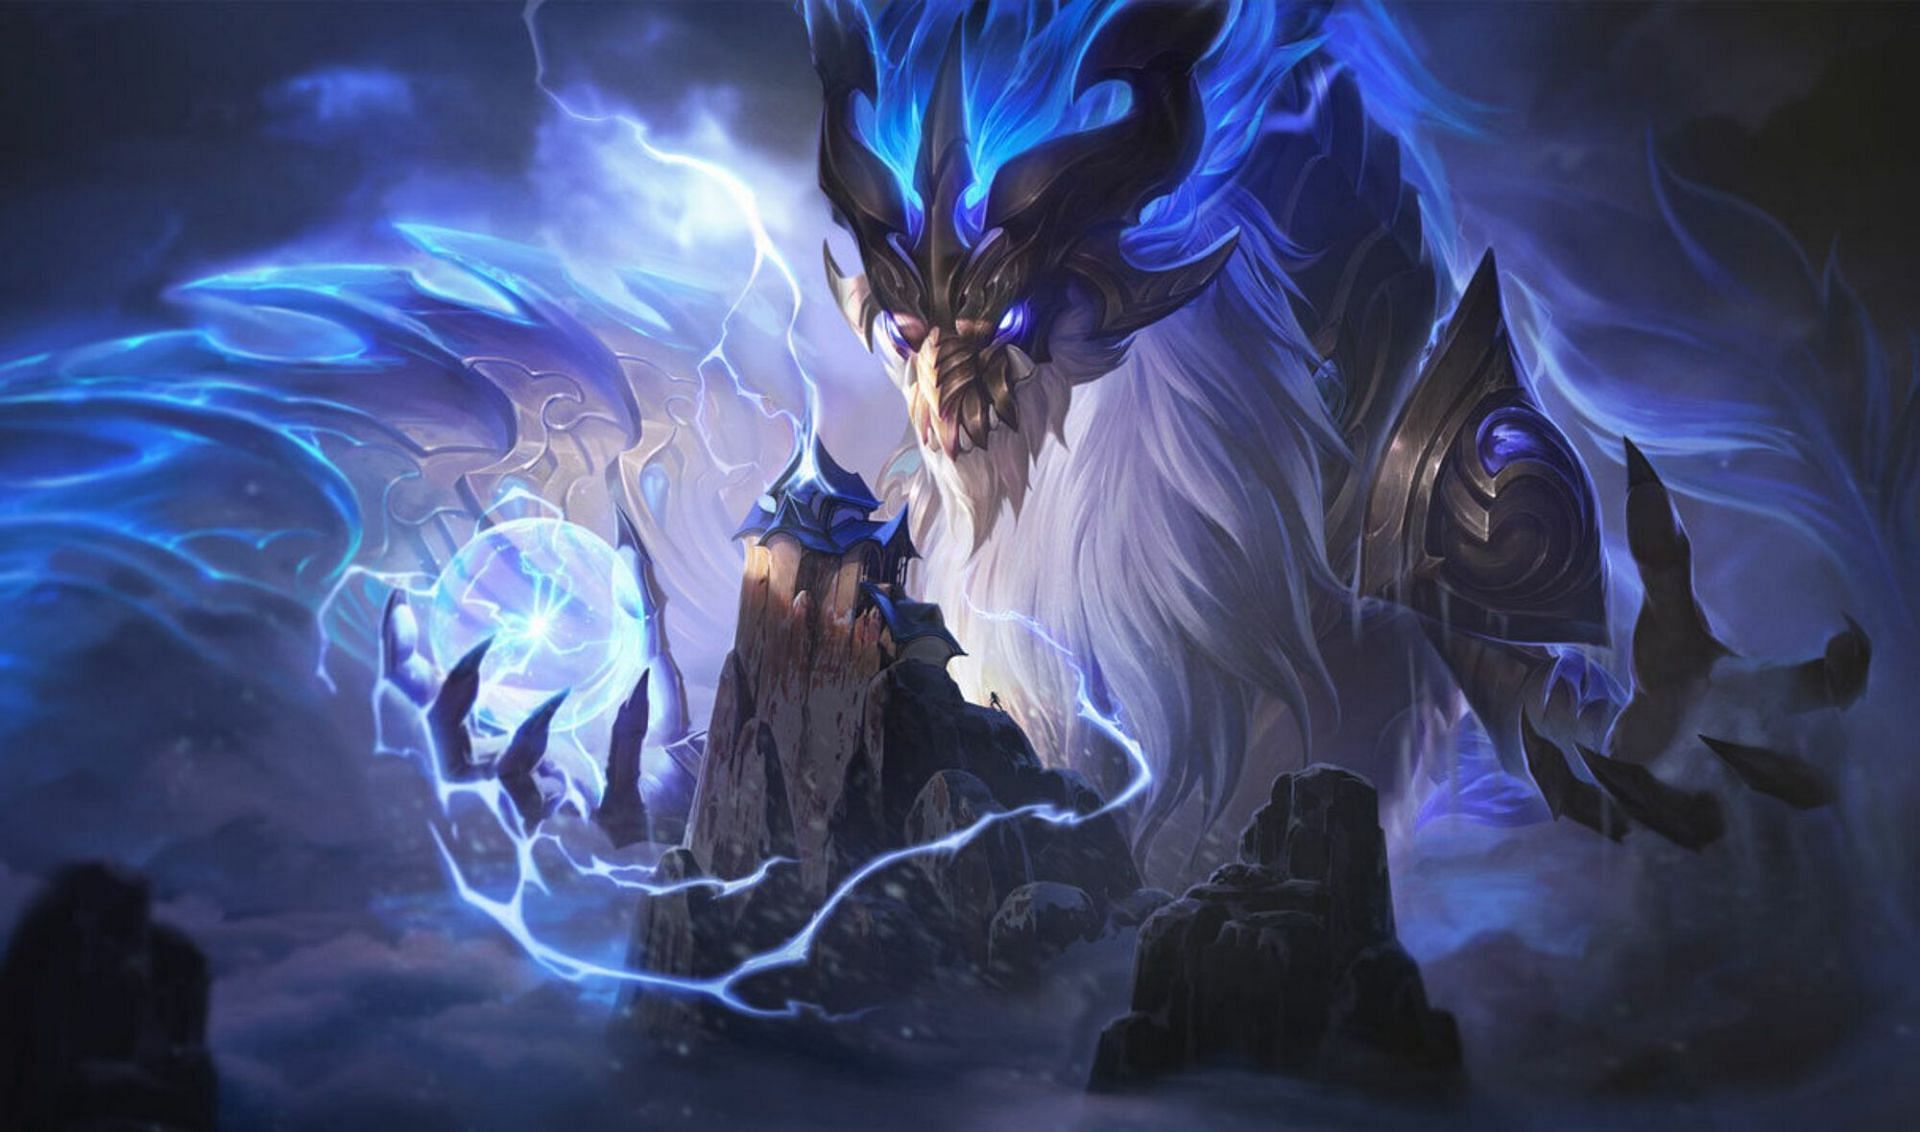 Storm Dragon Aurelion Sol (Image via Riot Games - League of Legends)